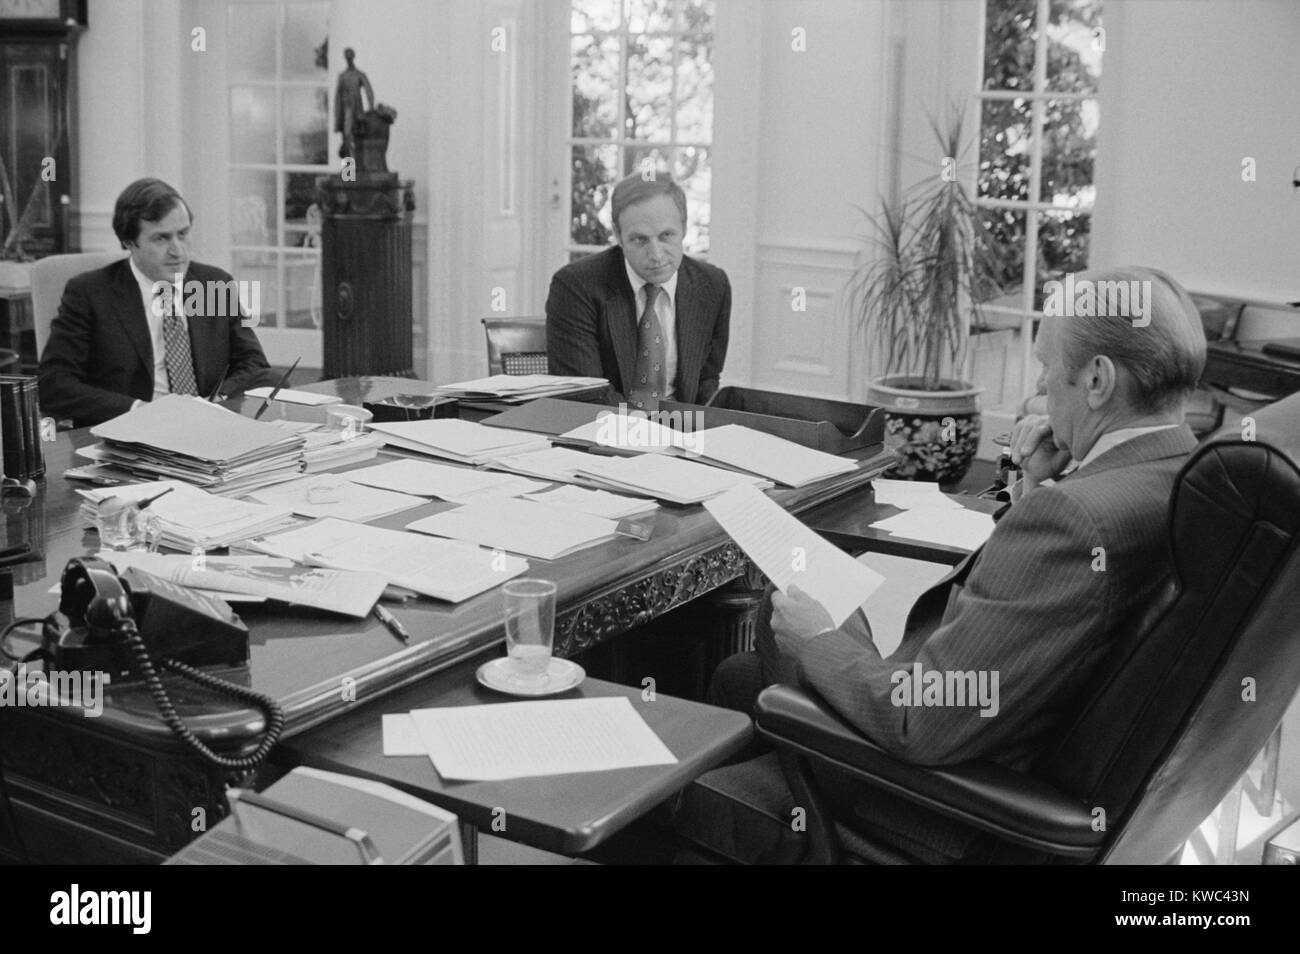 Le président Gerald Ford rencontre avec David Mathews(droite) et Dick Cheney. Mathews était secrétaire de HEW et Cheney a été chef de cabinet de la Maison Blanche. 22 septembre, 1976. (BSLOC   2015 14 60) Banque D'Images